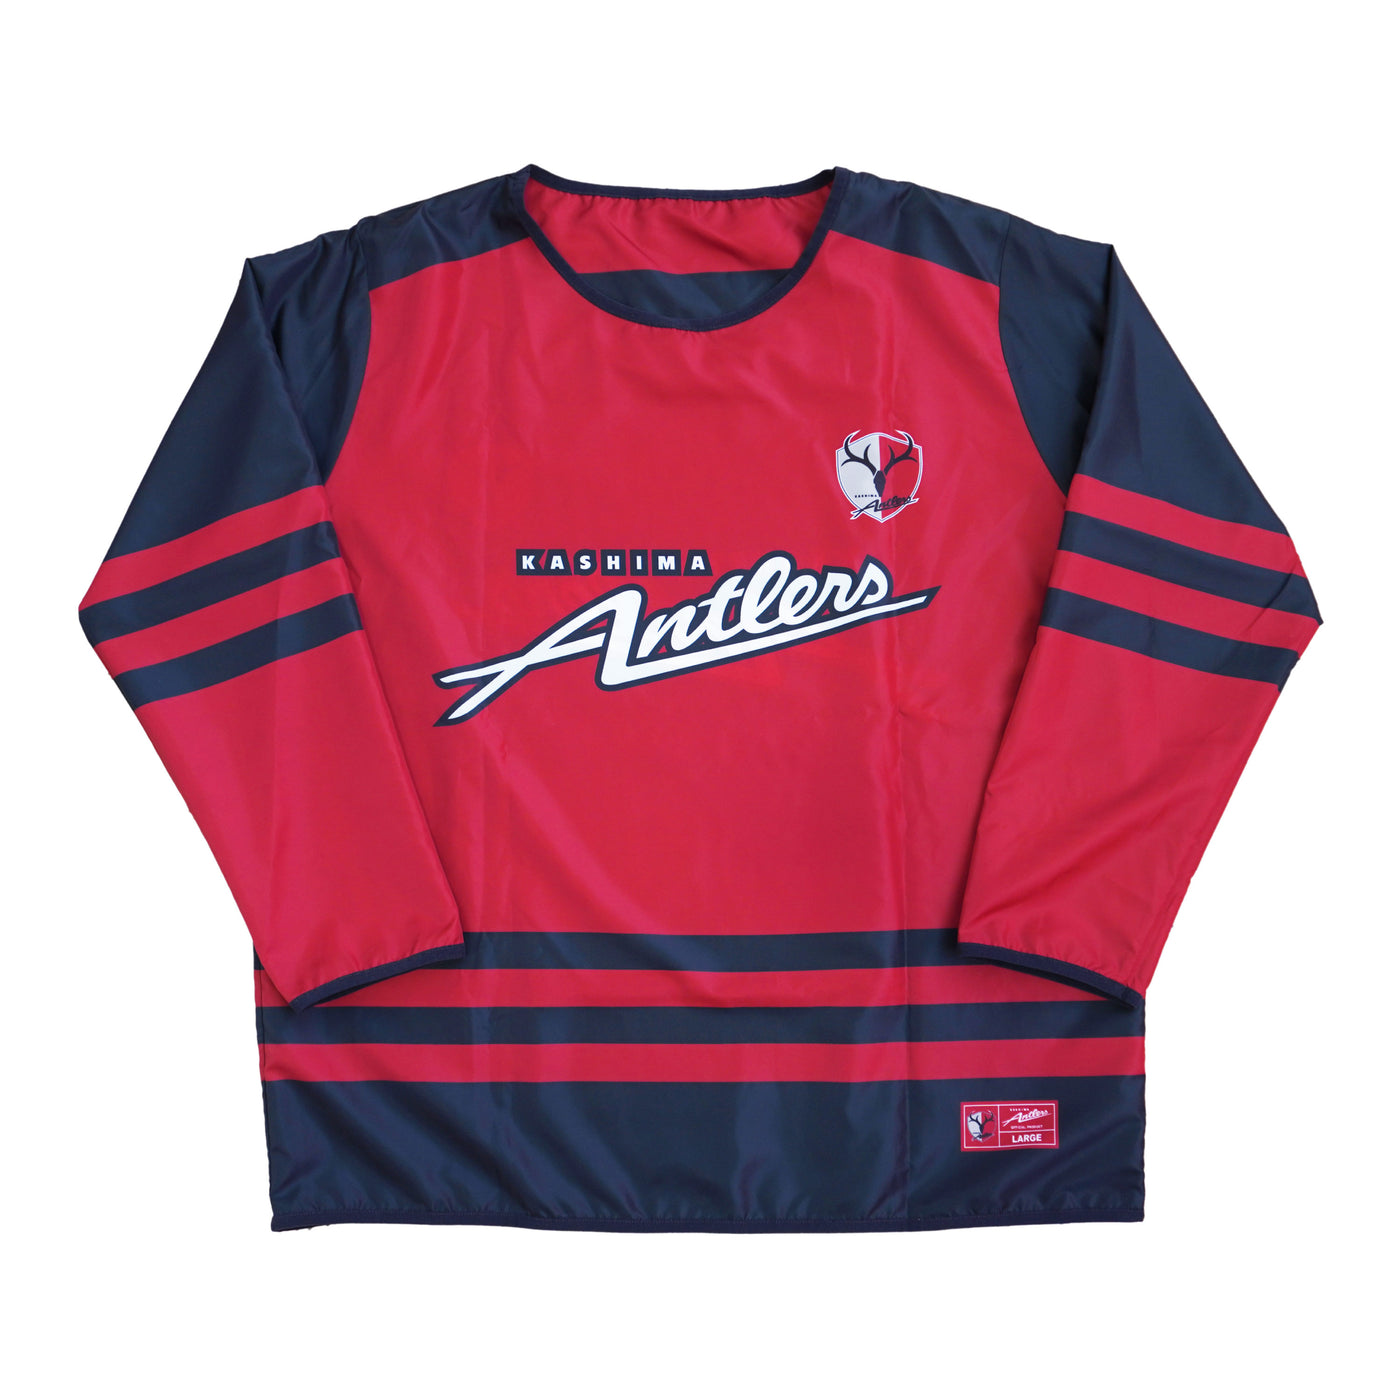 24リバーシブルホッケーシャツ（10柴崎） – 鹿島アントラーズFC - 公式 